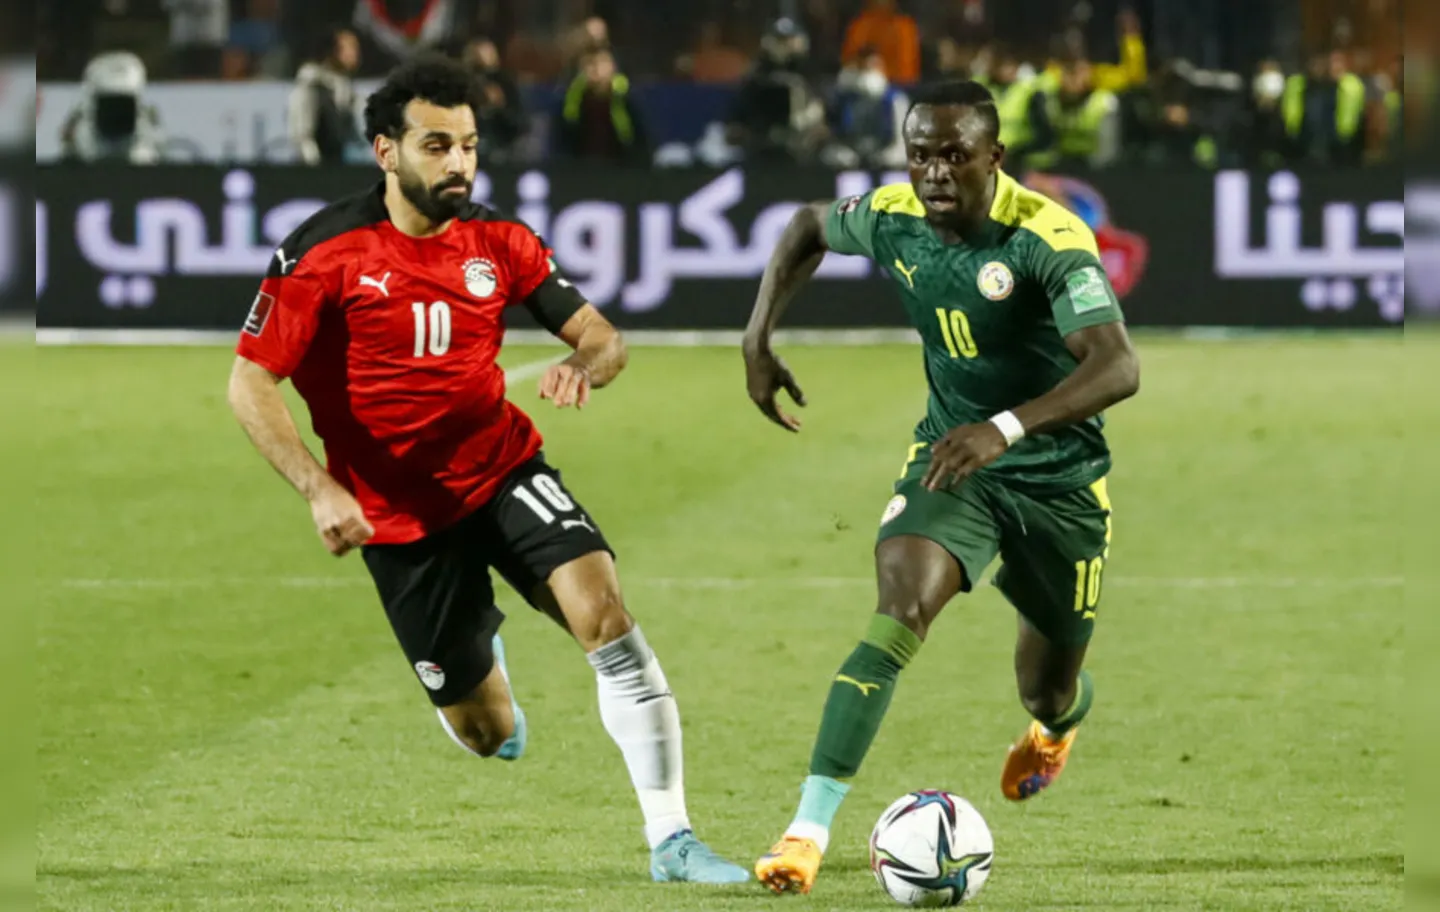 O novo duelo entre as estrelas Salah e Mané foi decidido com um gol contra do lateral senegalês Saliou Ciss